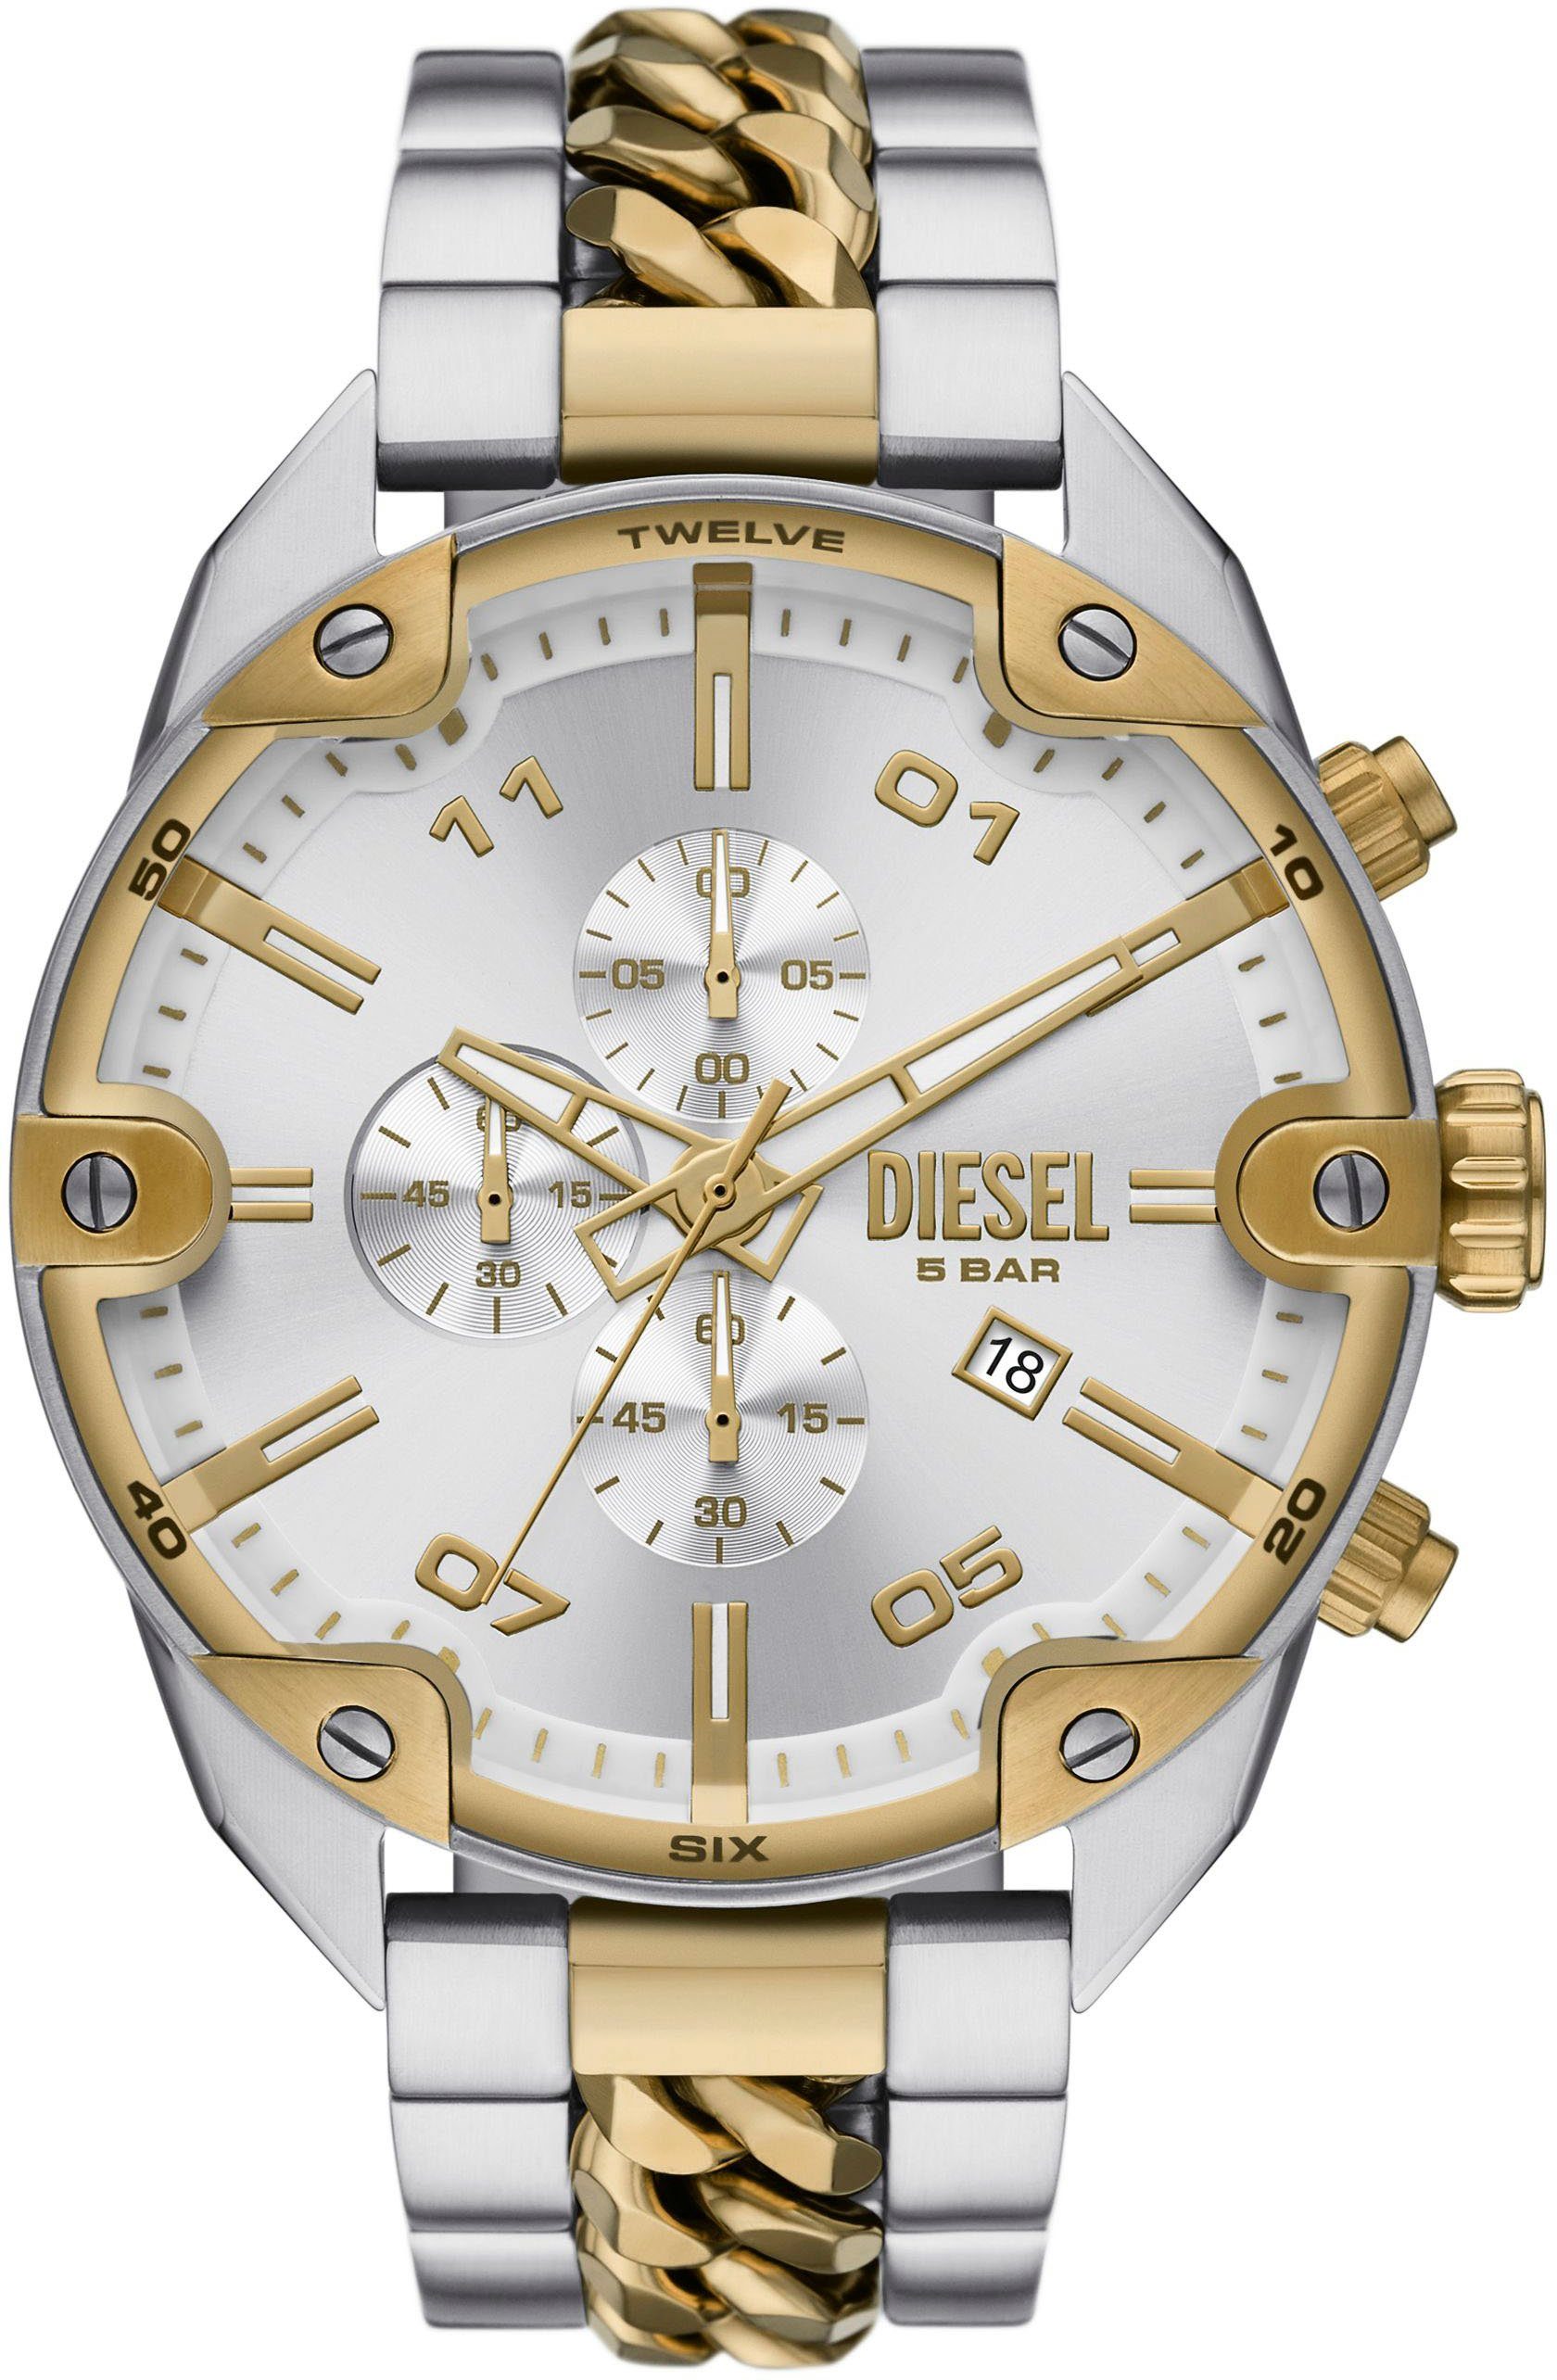 Diesel Chronograph SPIKED, DZ4629, Quarzuhr, Armbanduhr, Herrenuhr, Datum, Stoppfunktion